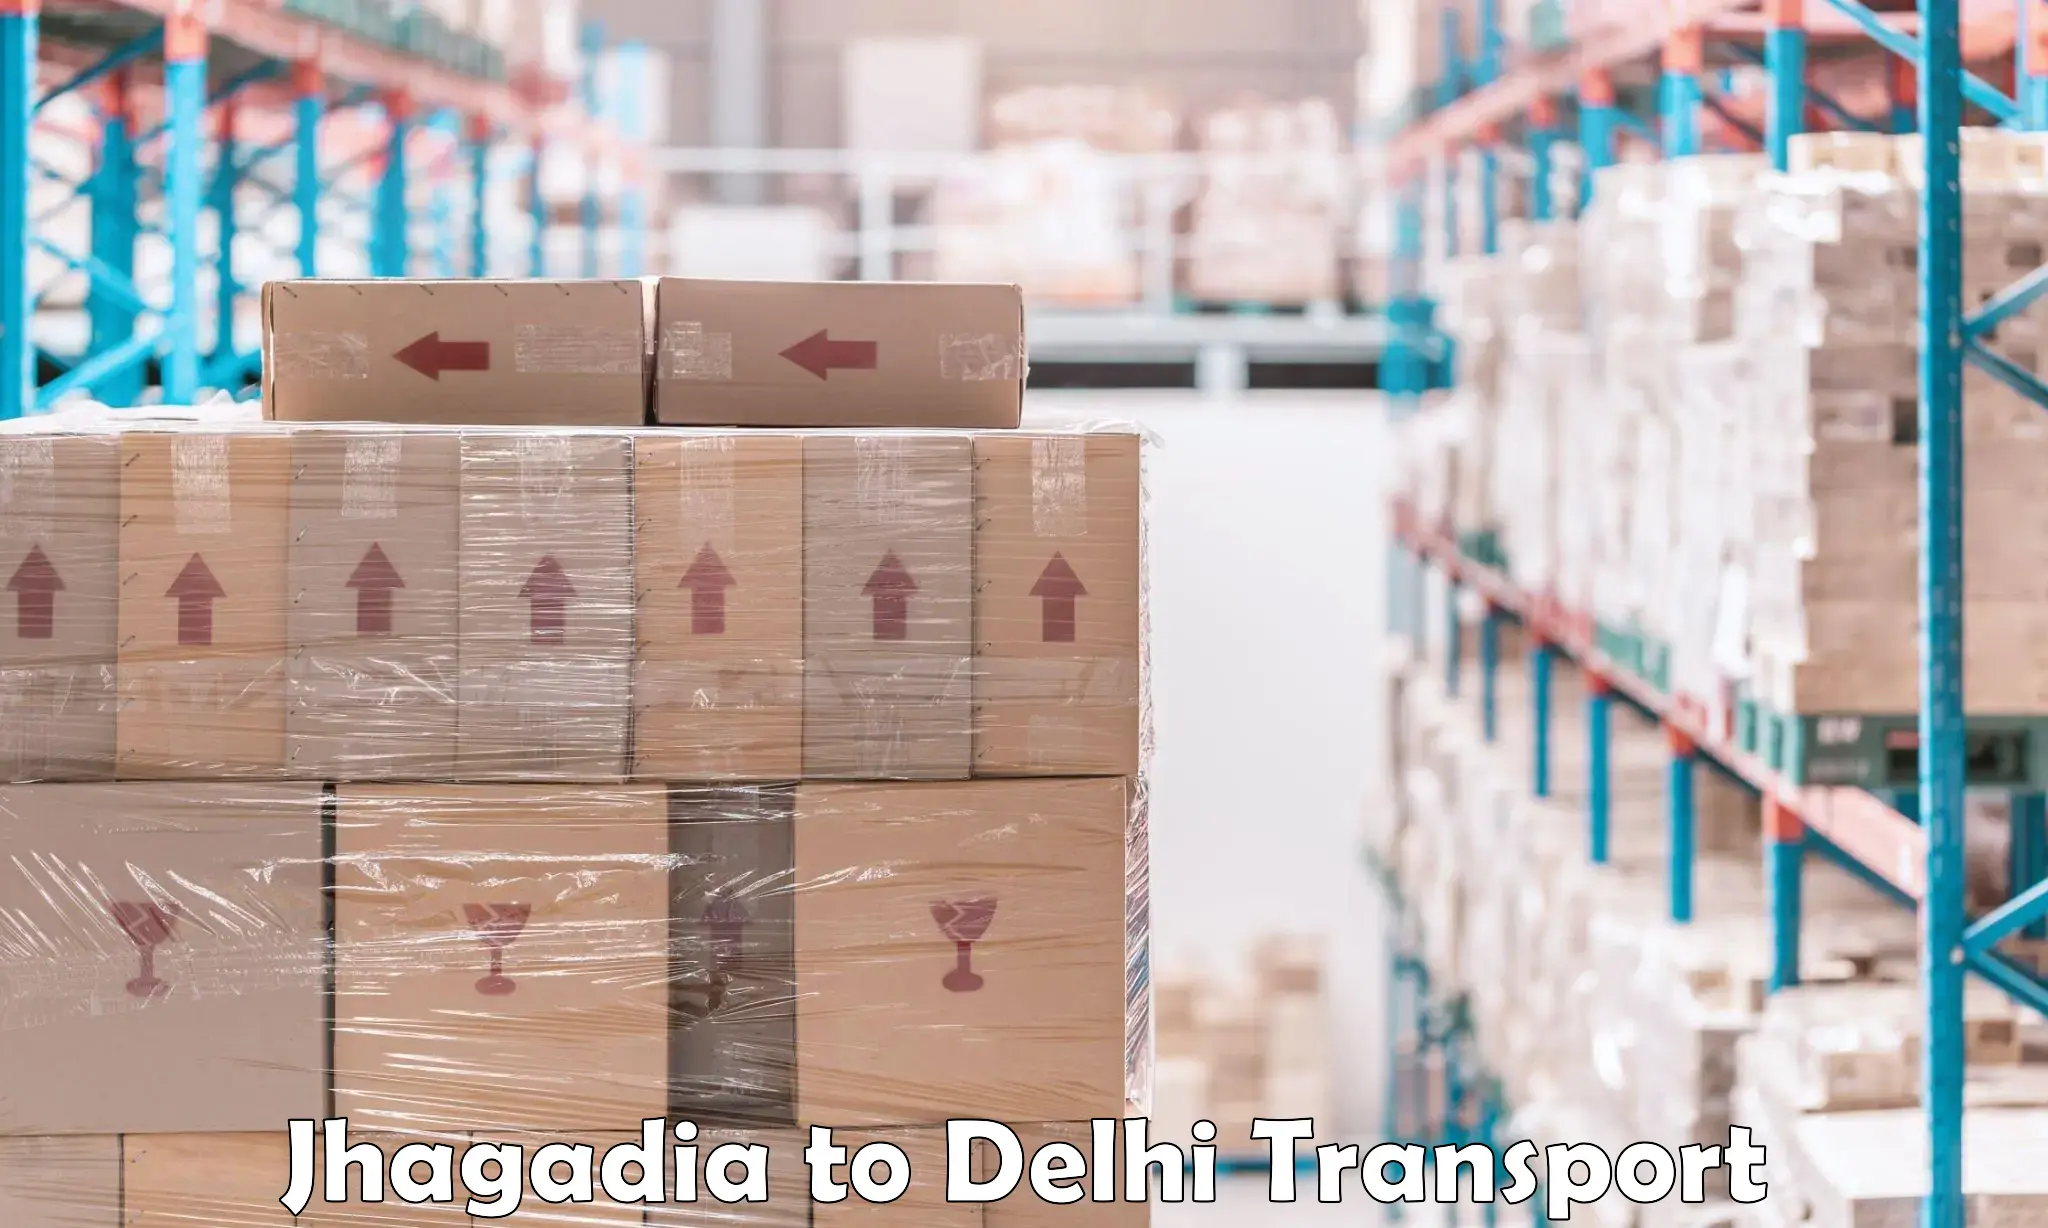 Daily transport service Jhagadia to University of Delhi